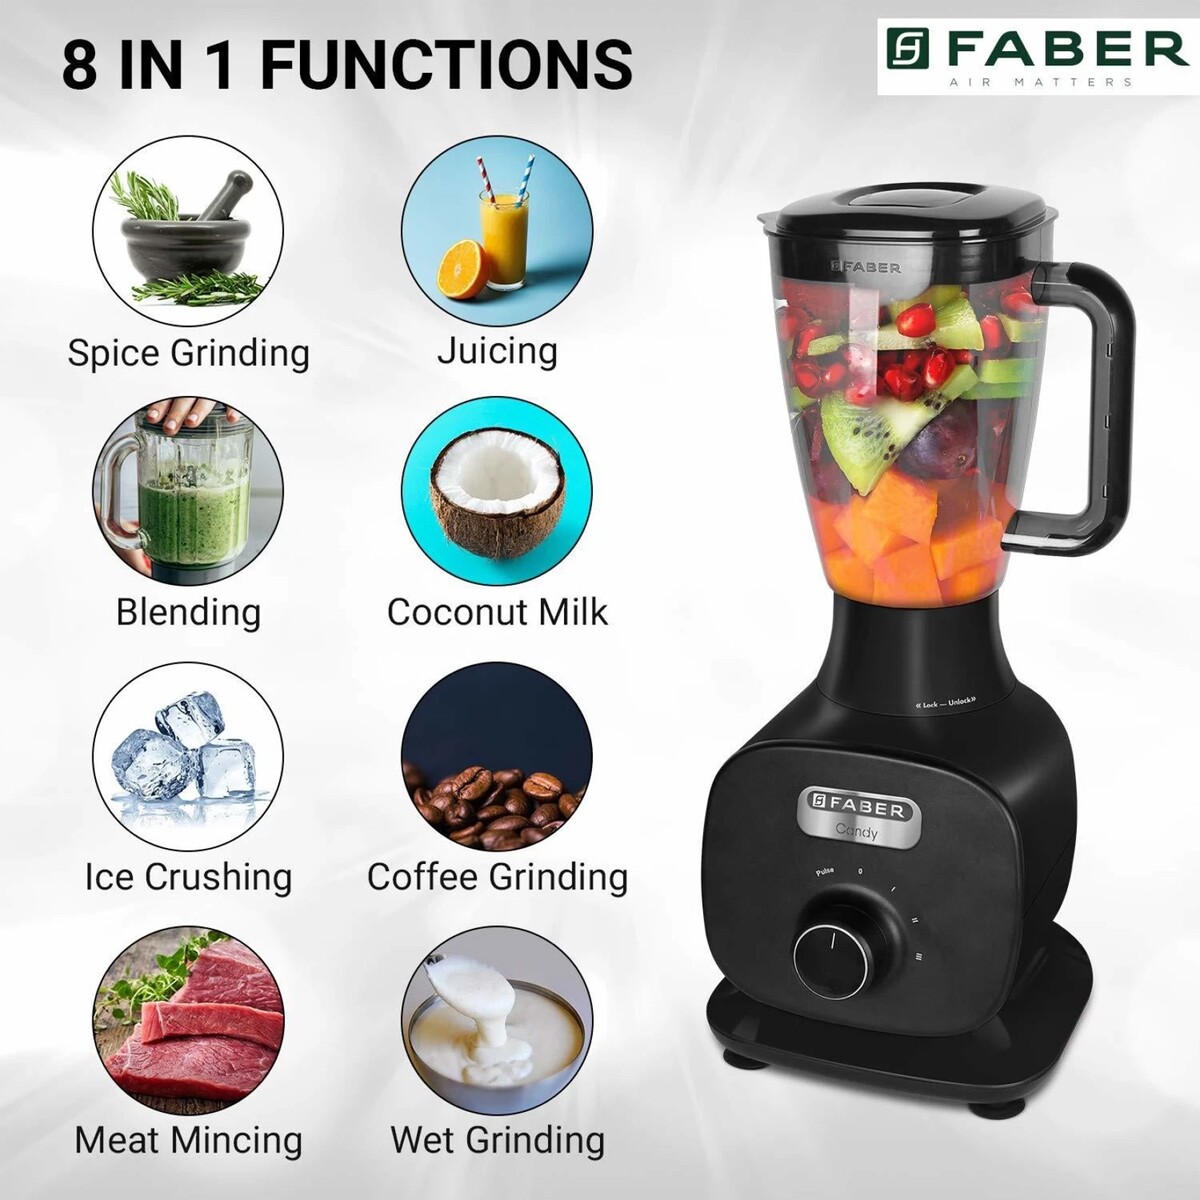 Faber 4 Jars Mixer Grinder Candy 800W Black